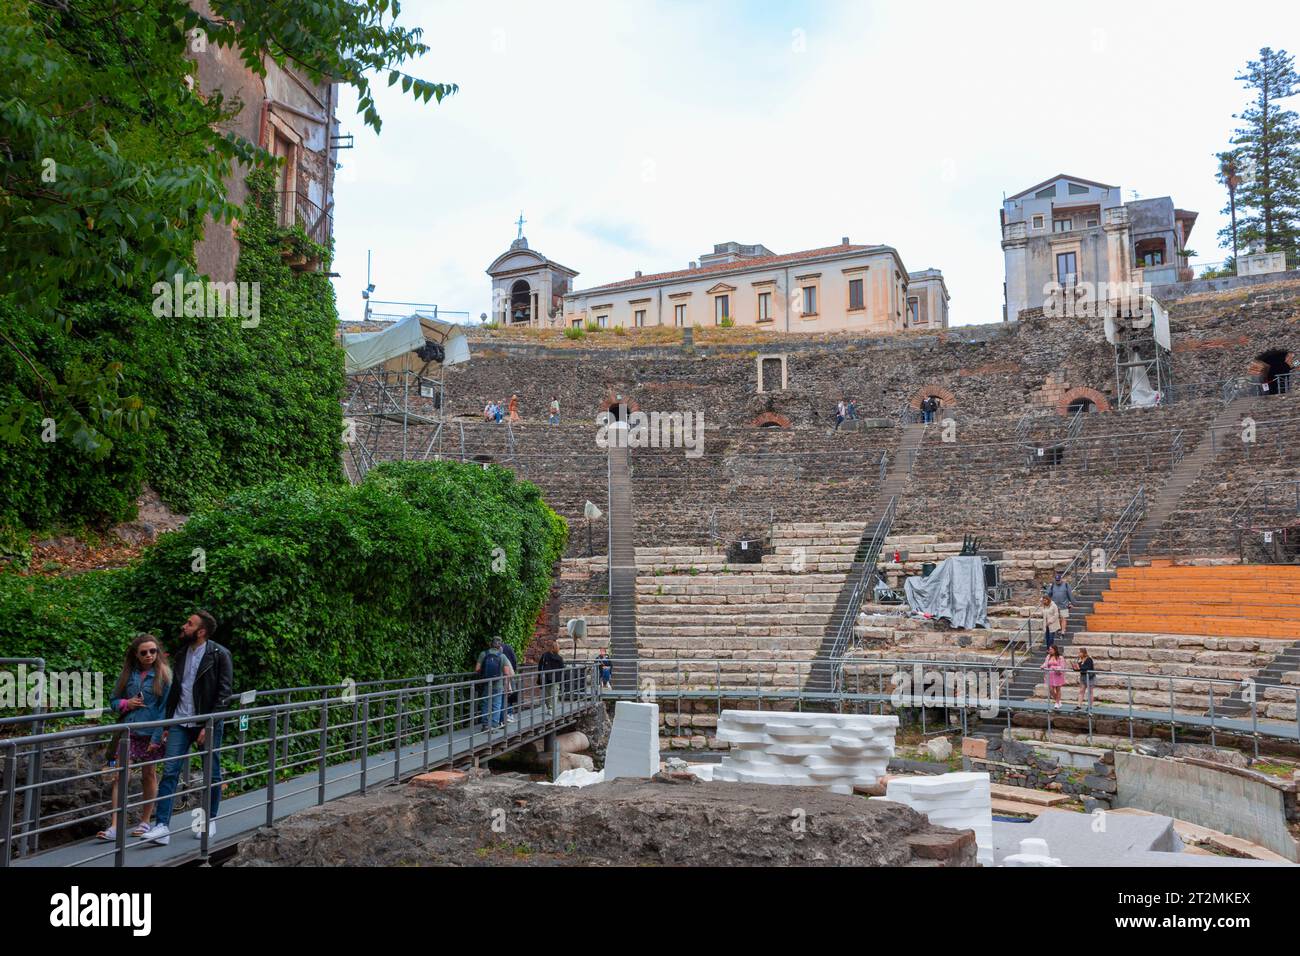 Catane, Sicile, Italie. L'ancien théat gréco-romain. Catane est un site du patrimoine mondial de l'UNESCO. Banque D'Images